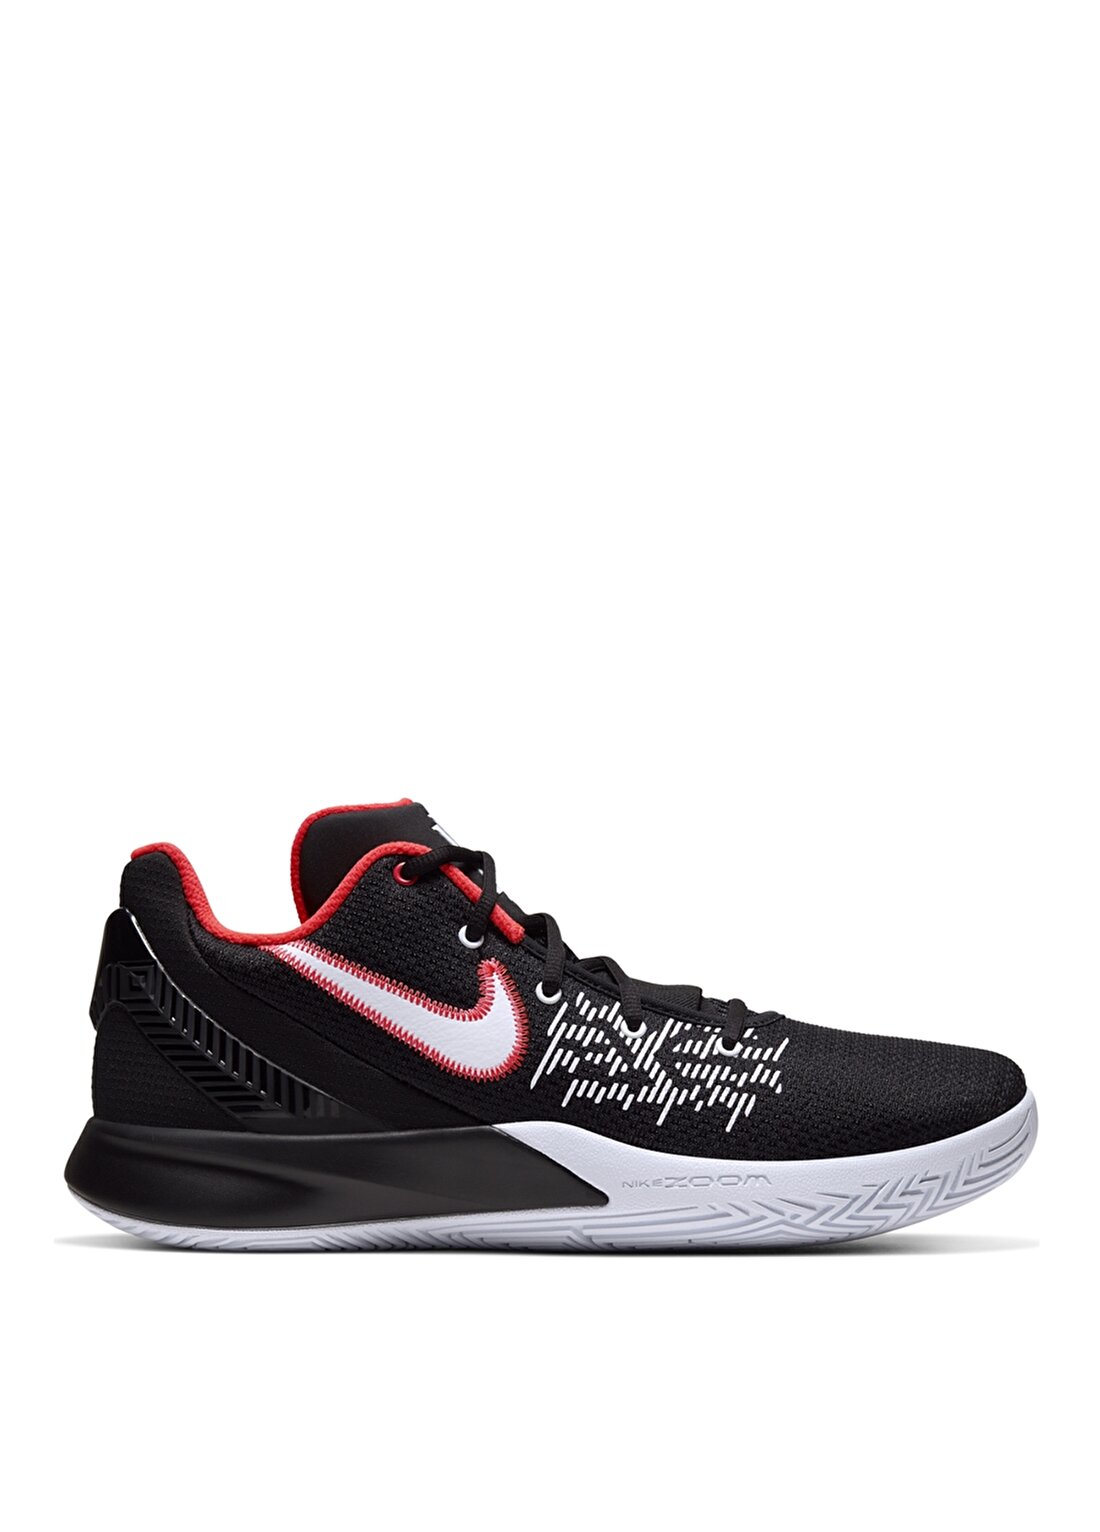 Nike Kyrie Flytrap II Basketbol Ayakkabısı